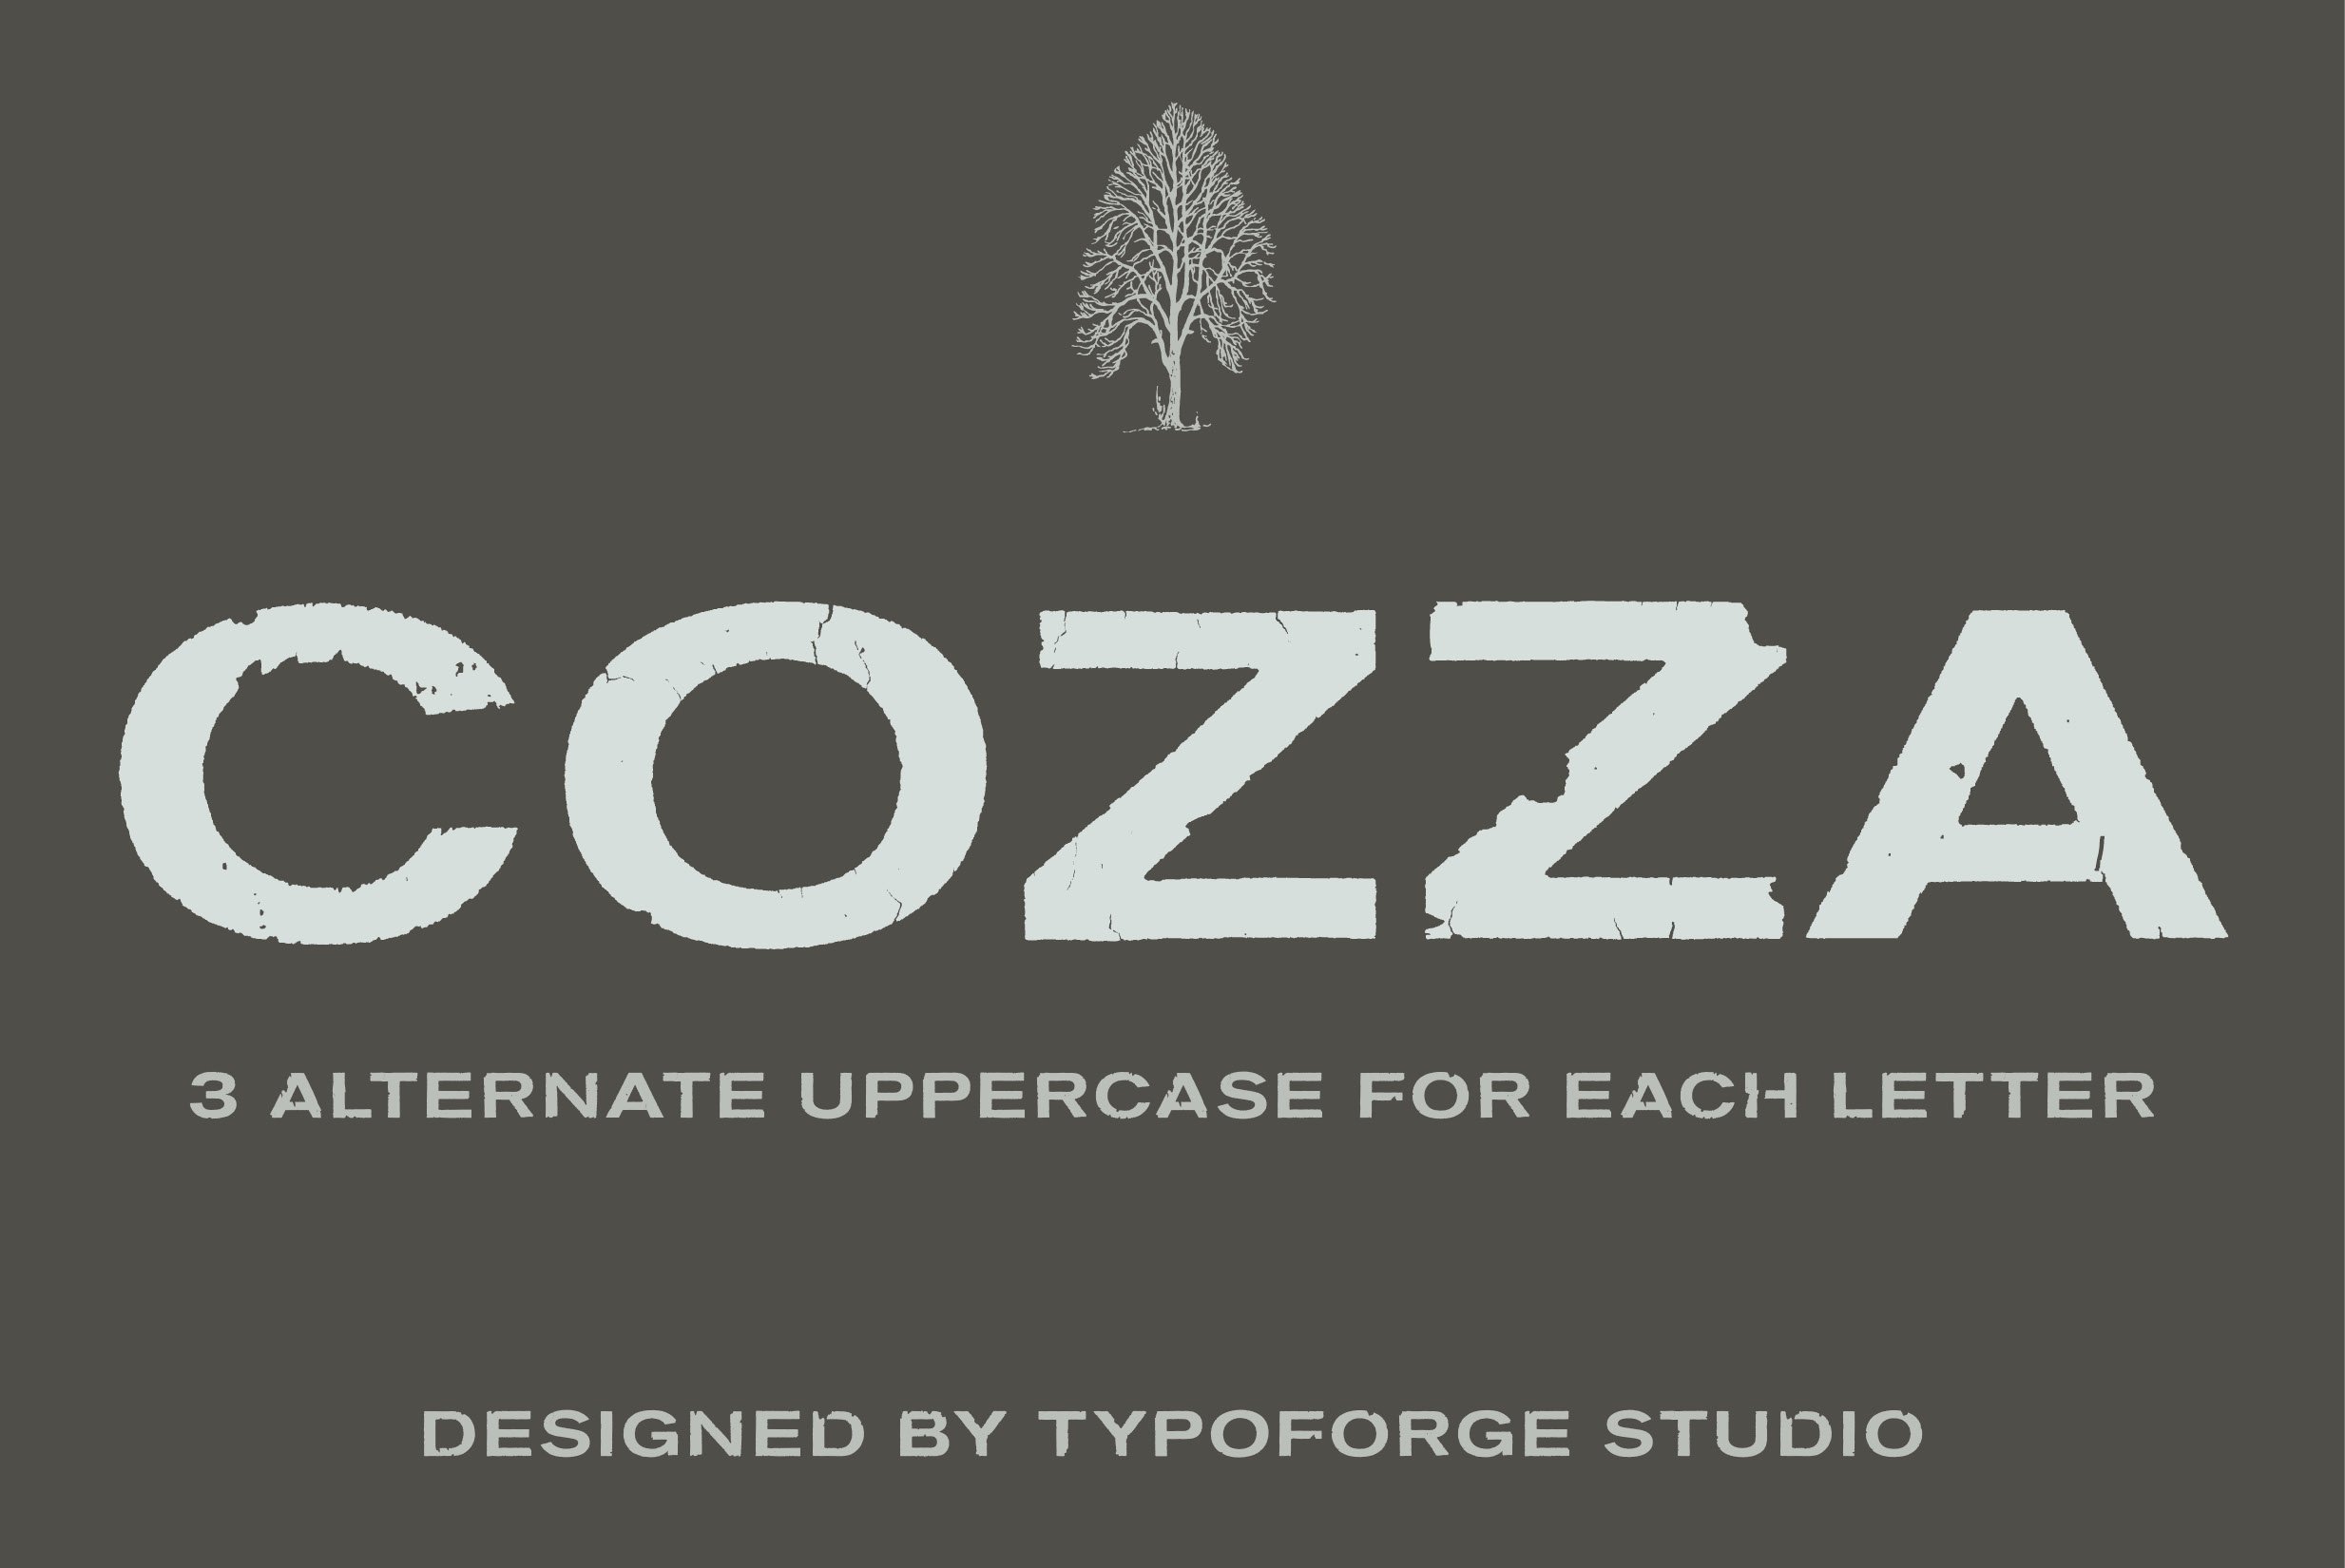 Cozza Letraset – now 9$ cover image.